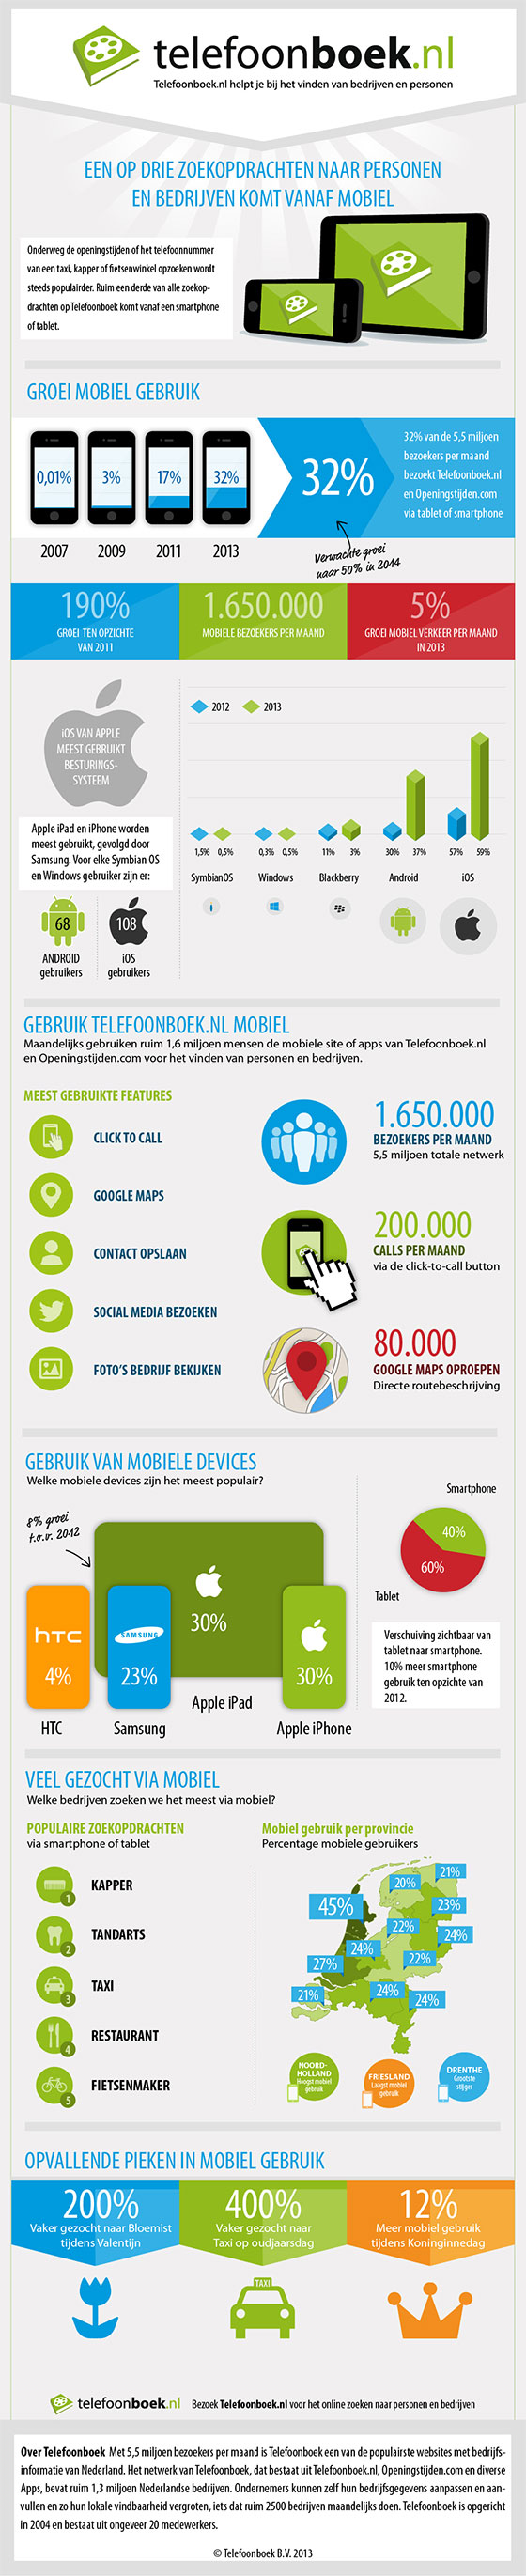 Infographic-Telefoonboek.nl